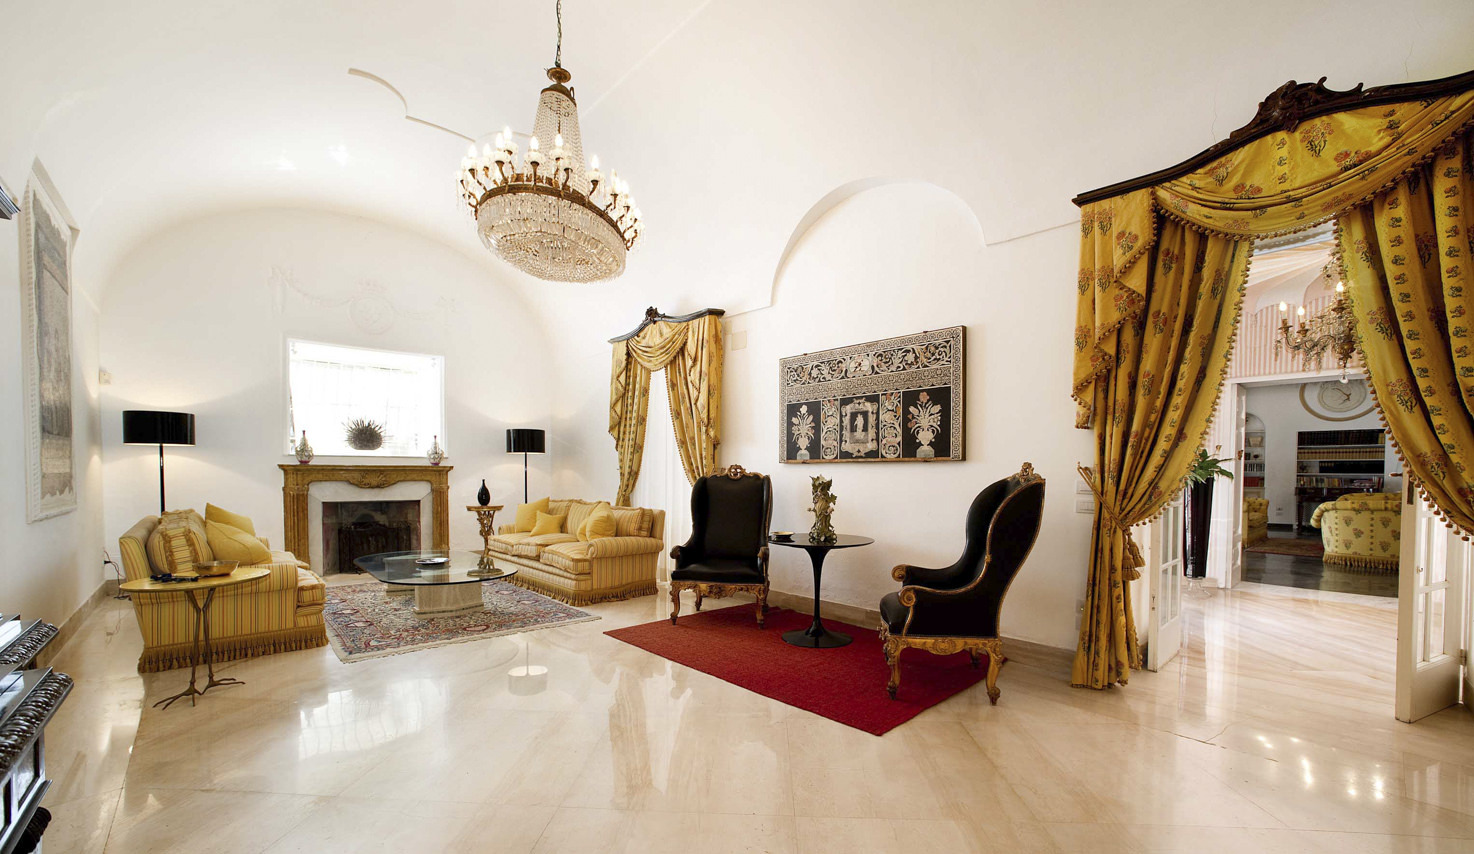 Elegant lobby of villa in Capri